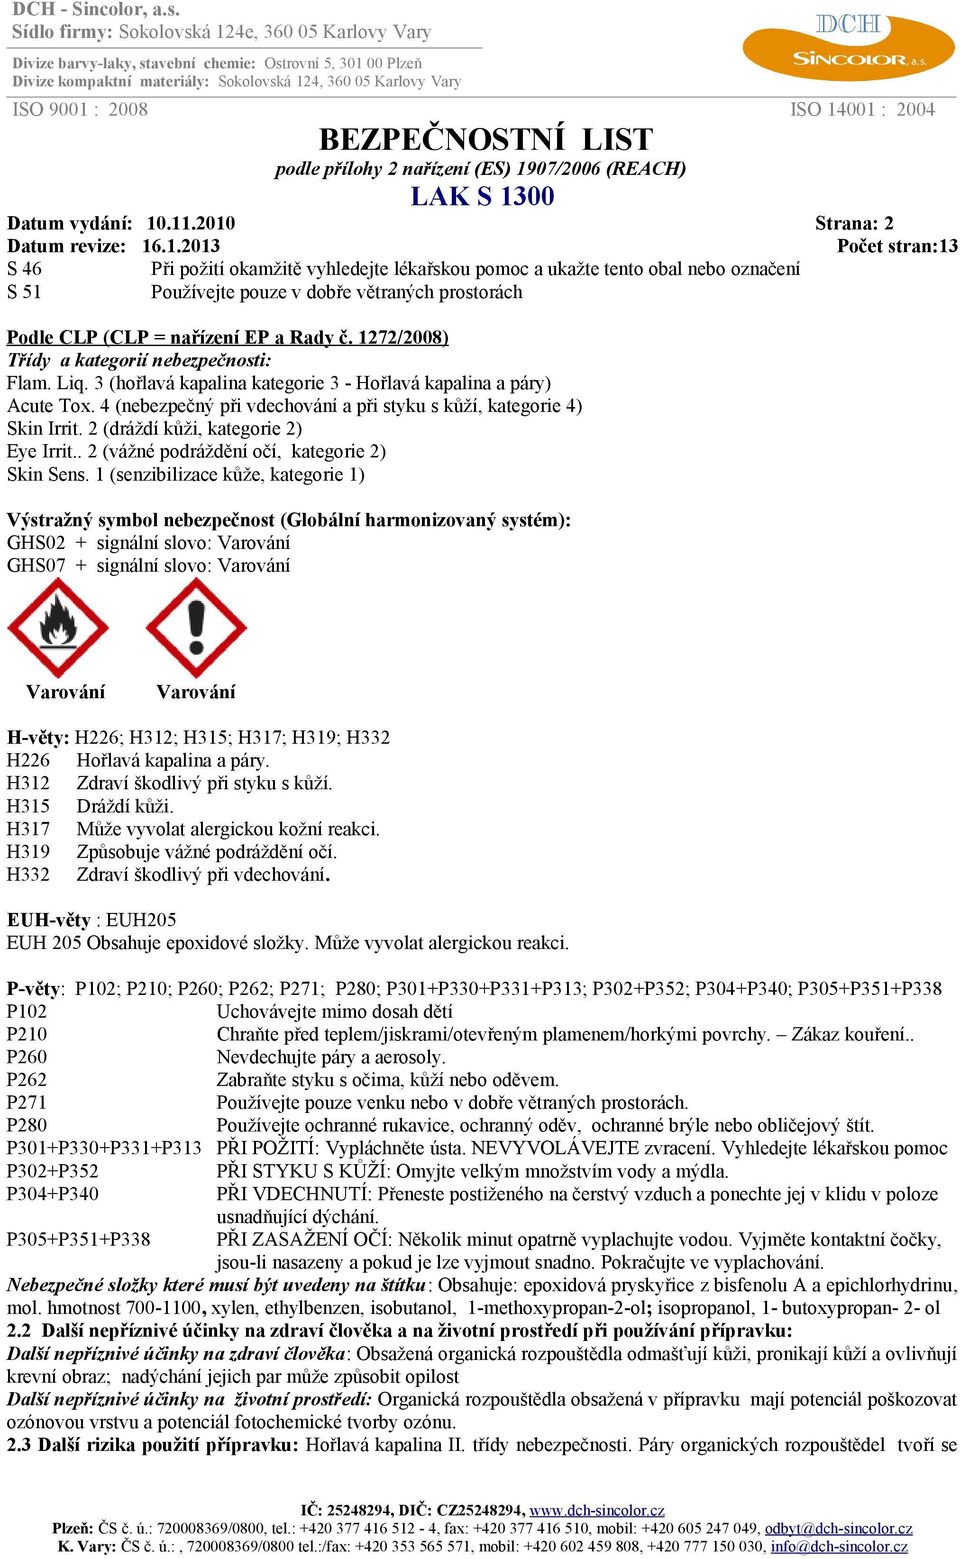 1272/2008) Třídy a kategorií nebezpečnosti: Flam. Liq. 3 (hořlavá kapalina kategorie 3 - Hořlavá kapalina a páry) Acute Tox. 4 (nebezpečný při vdechování a při styku s kůží, kategorie 4) Skin Irrit.